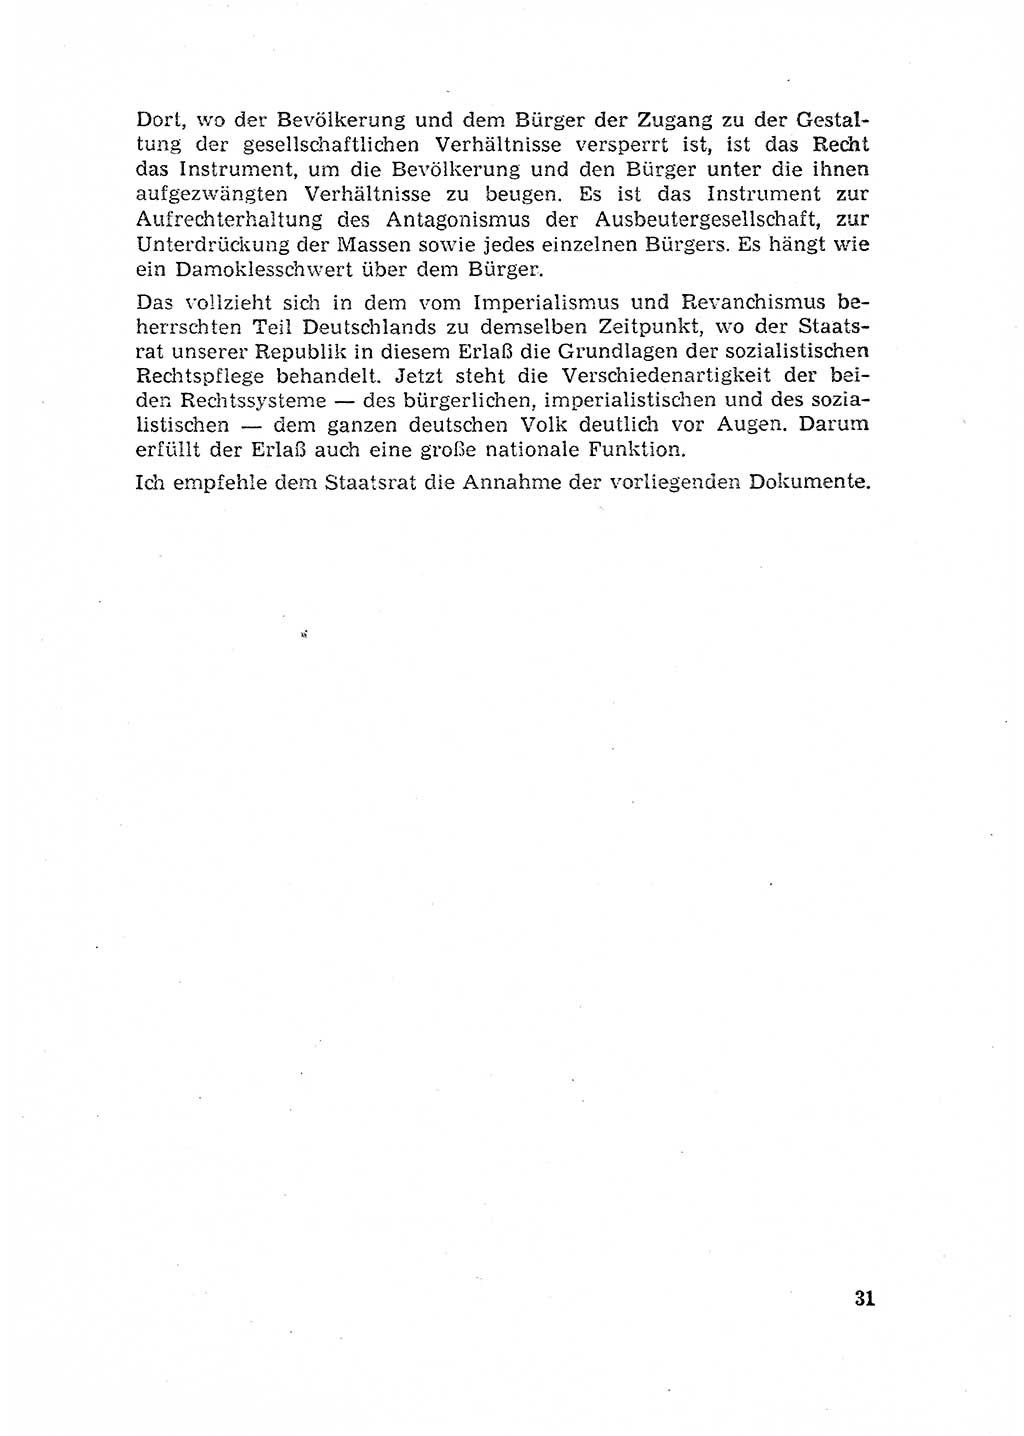 Rechtspflegeerlaß [Deutsche Demokratische Republik (DDR)] 1963, Seite 31 (R.-Pfl.-Erl. DDR 1963, S. 31)